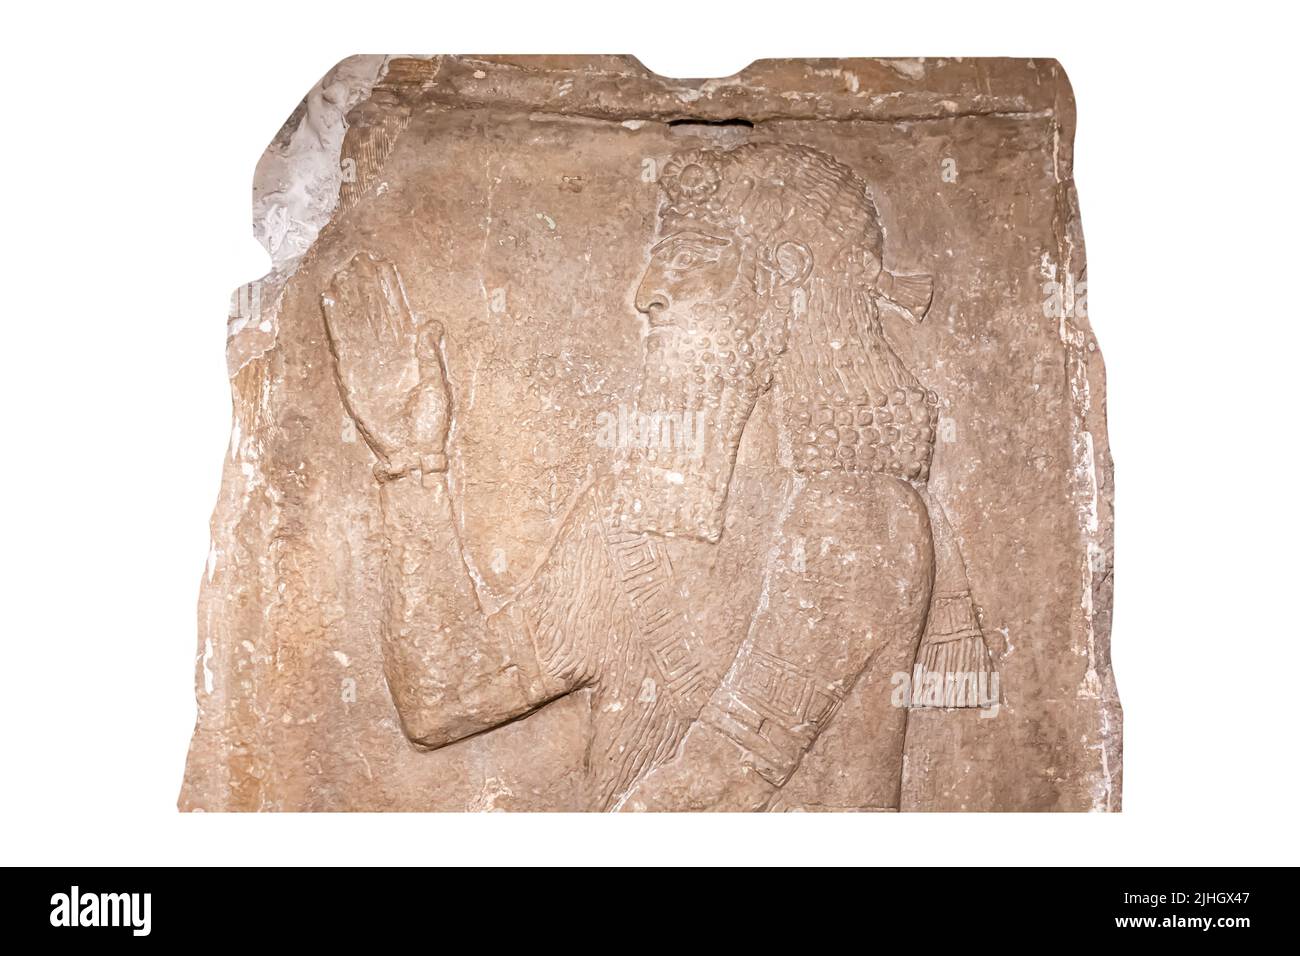 Priester hält einen Sprossen - Detail - Relief aus dem Palast von Sargon II in Dur-Sharrukin ( Khorsabad ) - Kalkstein - 8. Jahrhundert v. Chr. Hermitage Museum Stockfoto